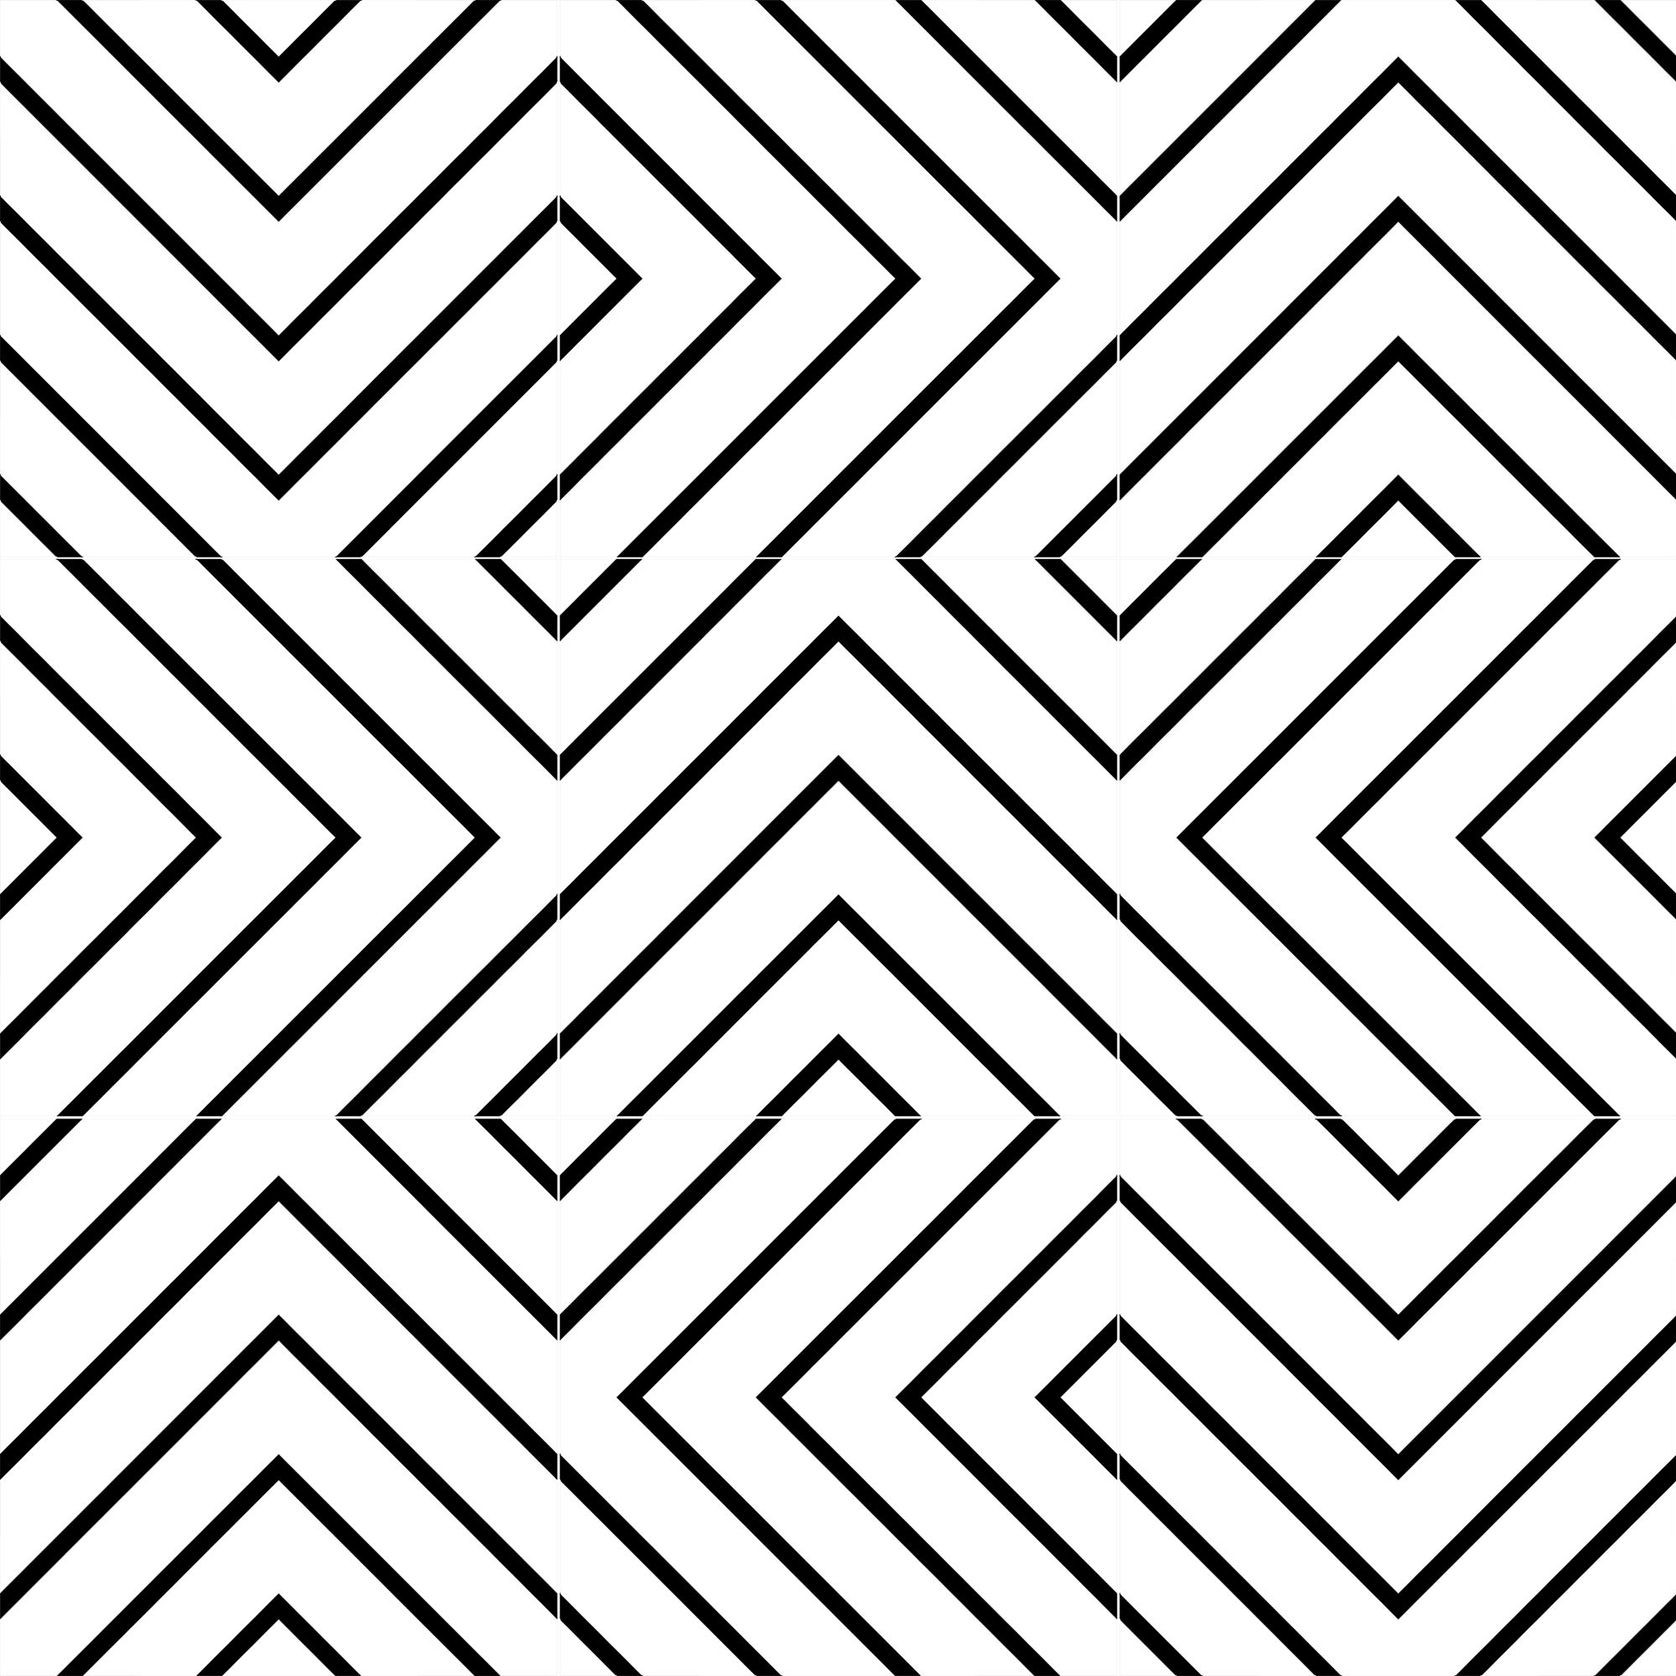 Matrix Floor Tiles gallery detail image